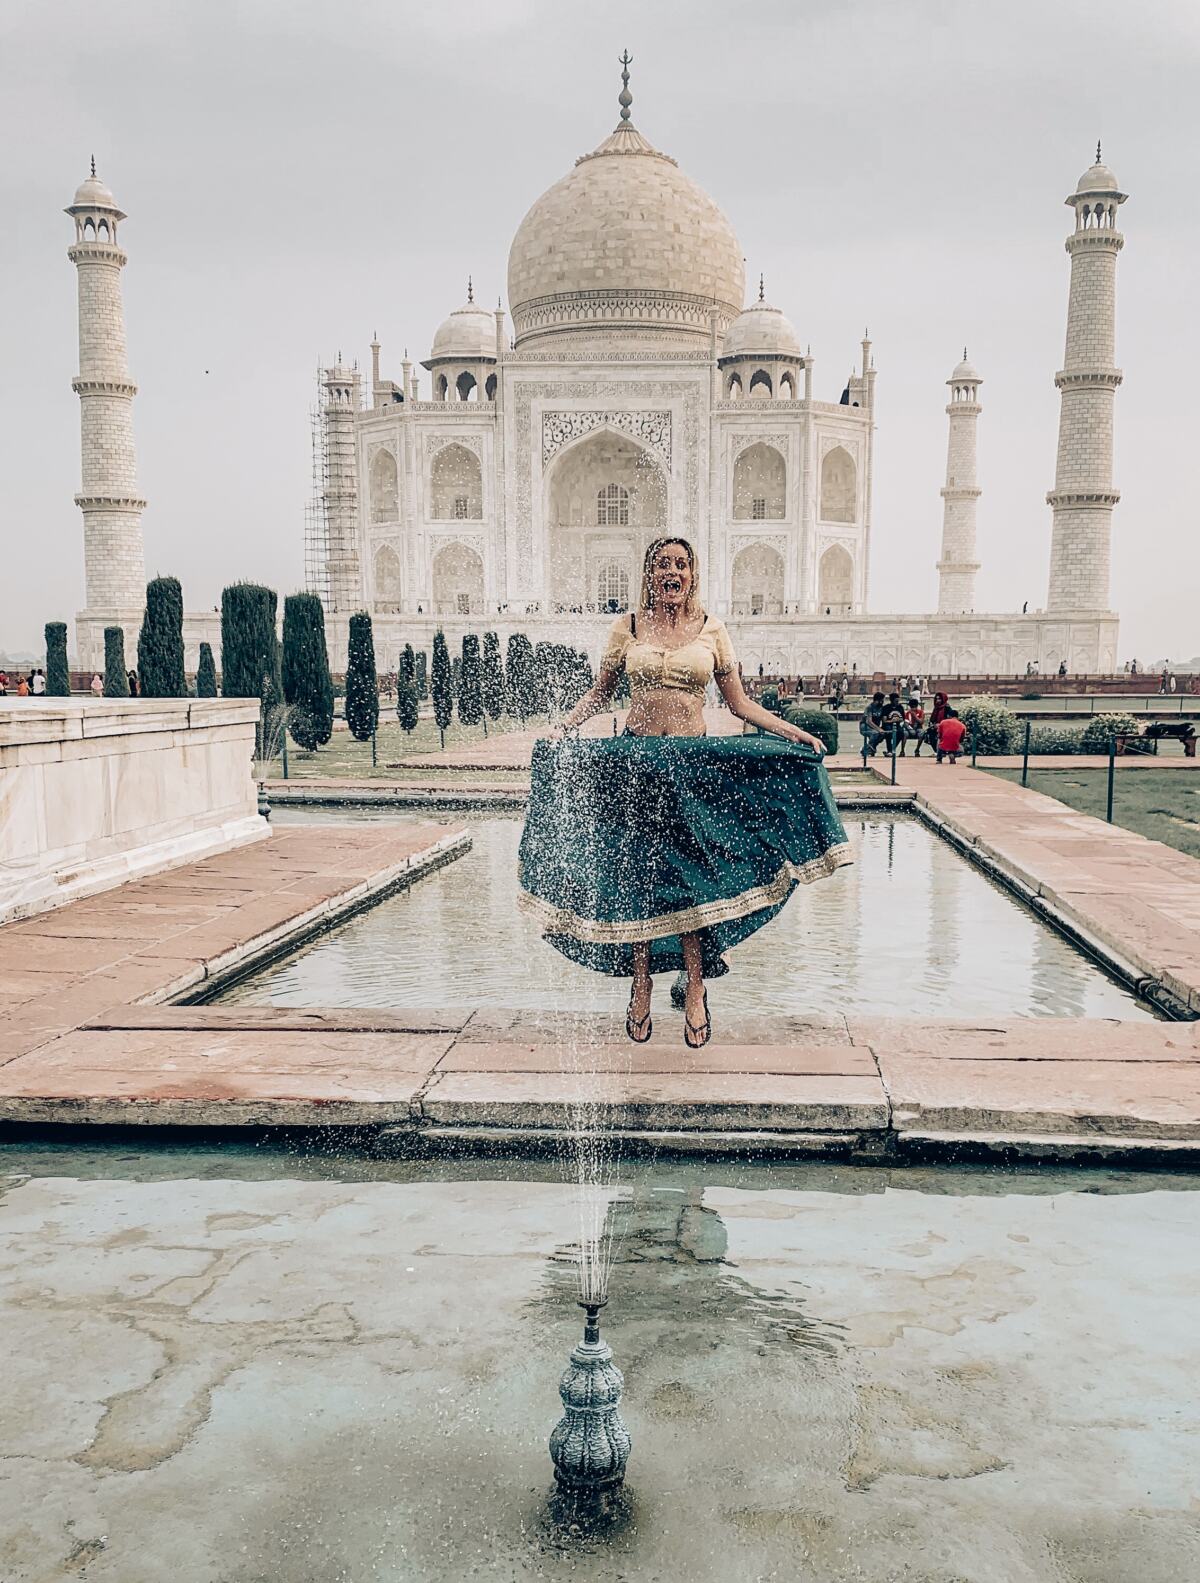 at the Taj Mahal India.